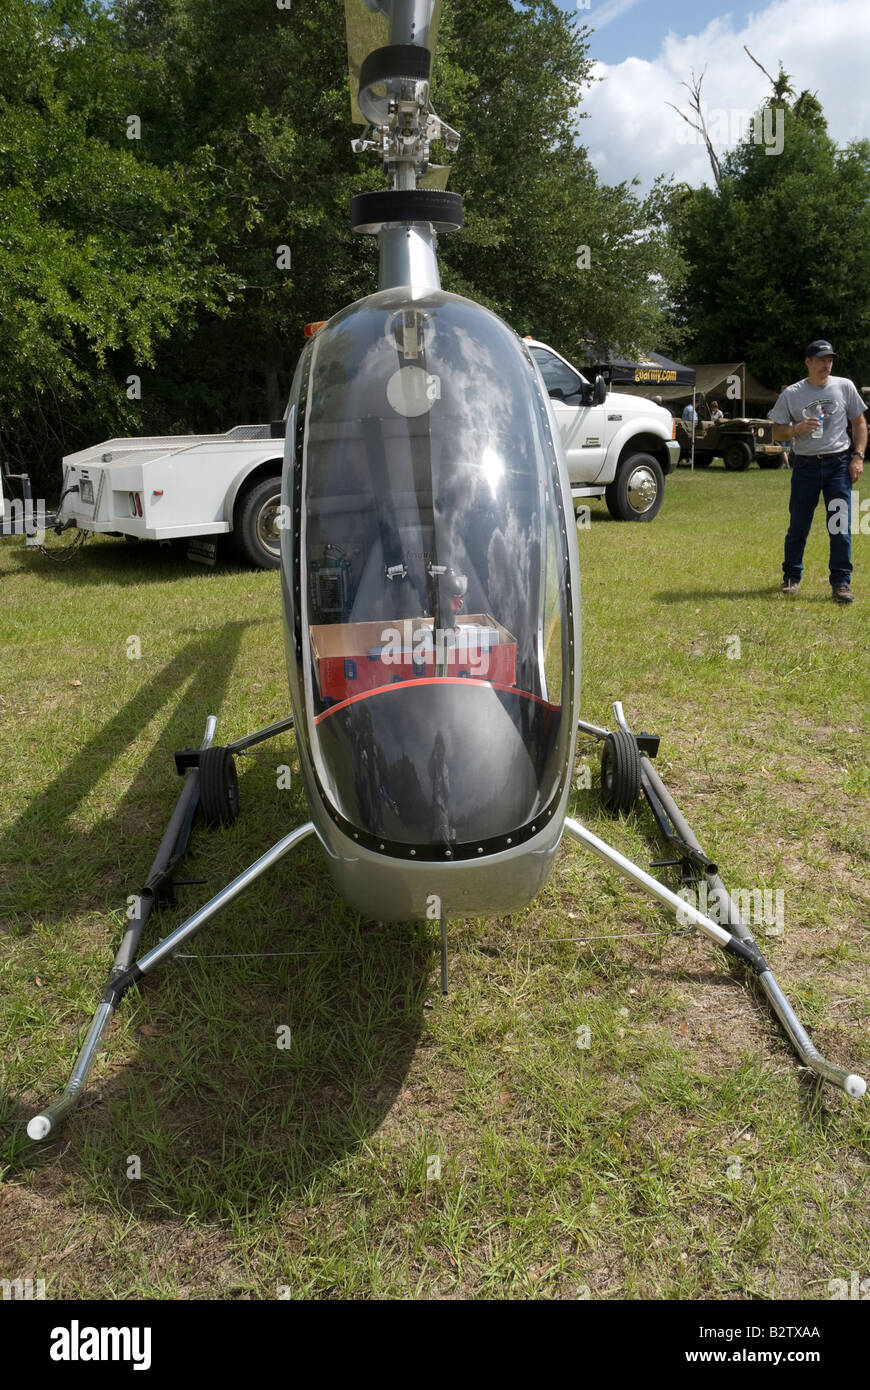 Turbine helicopter immagini e fotografie stock ad alta risoluzione - Alamy